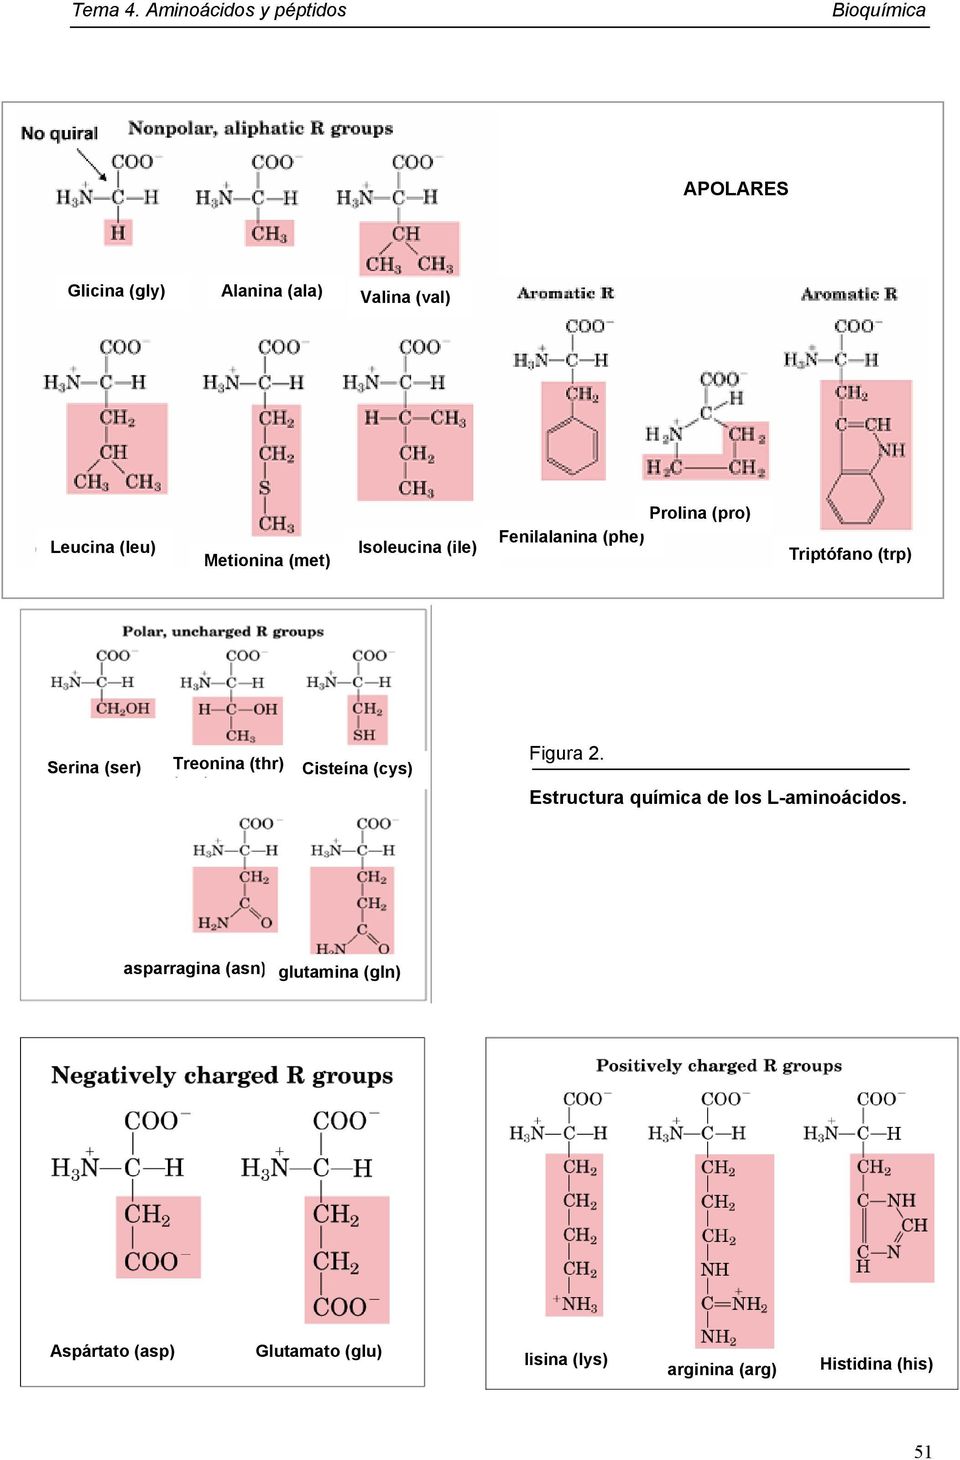 Cisteína (cys) Figura 2. Estructura química de los L-aminoácidos.